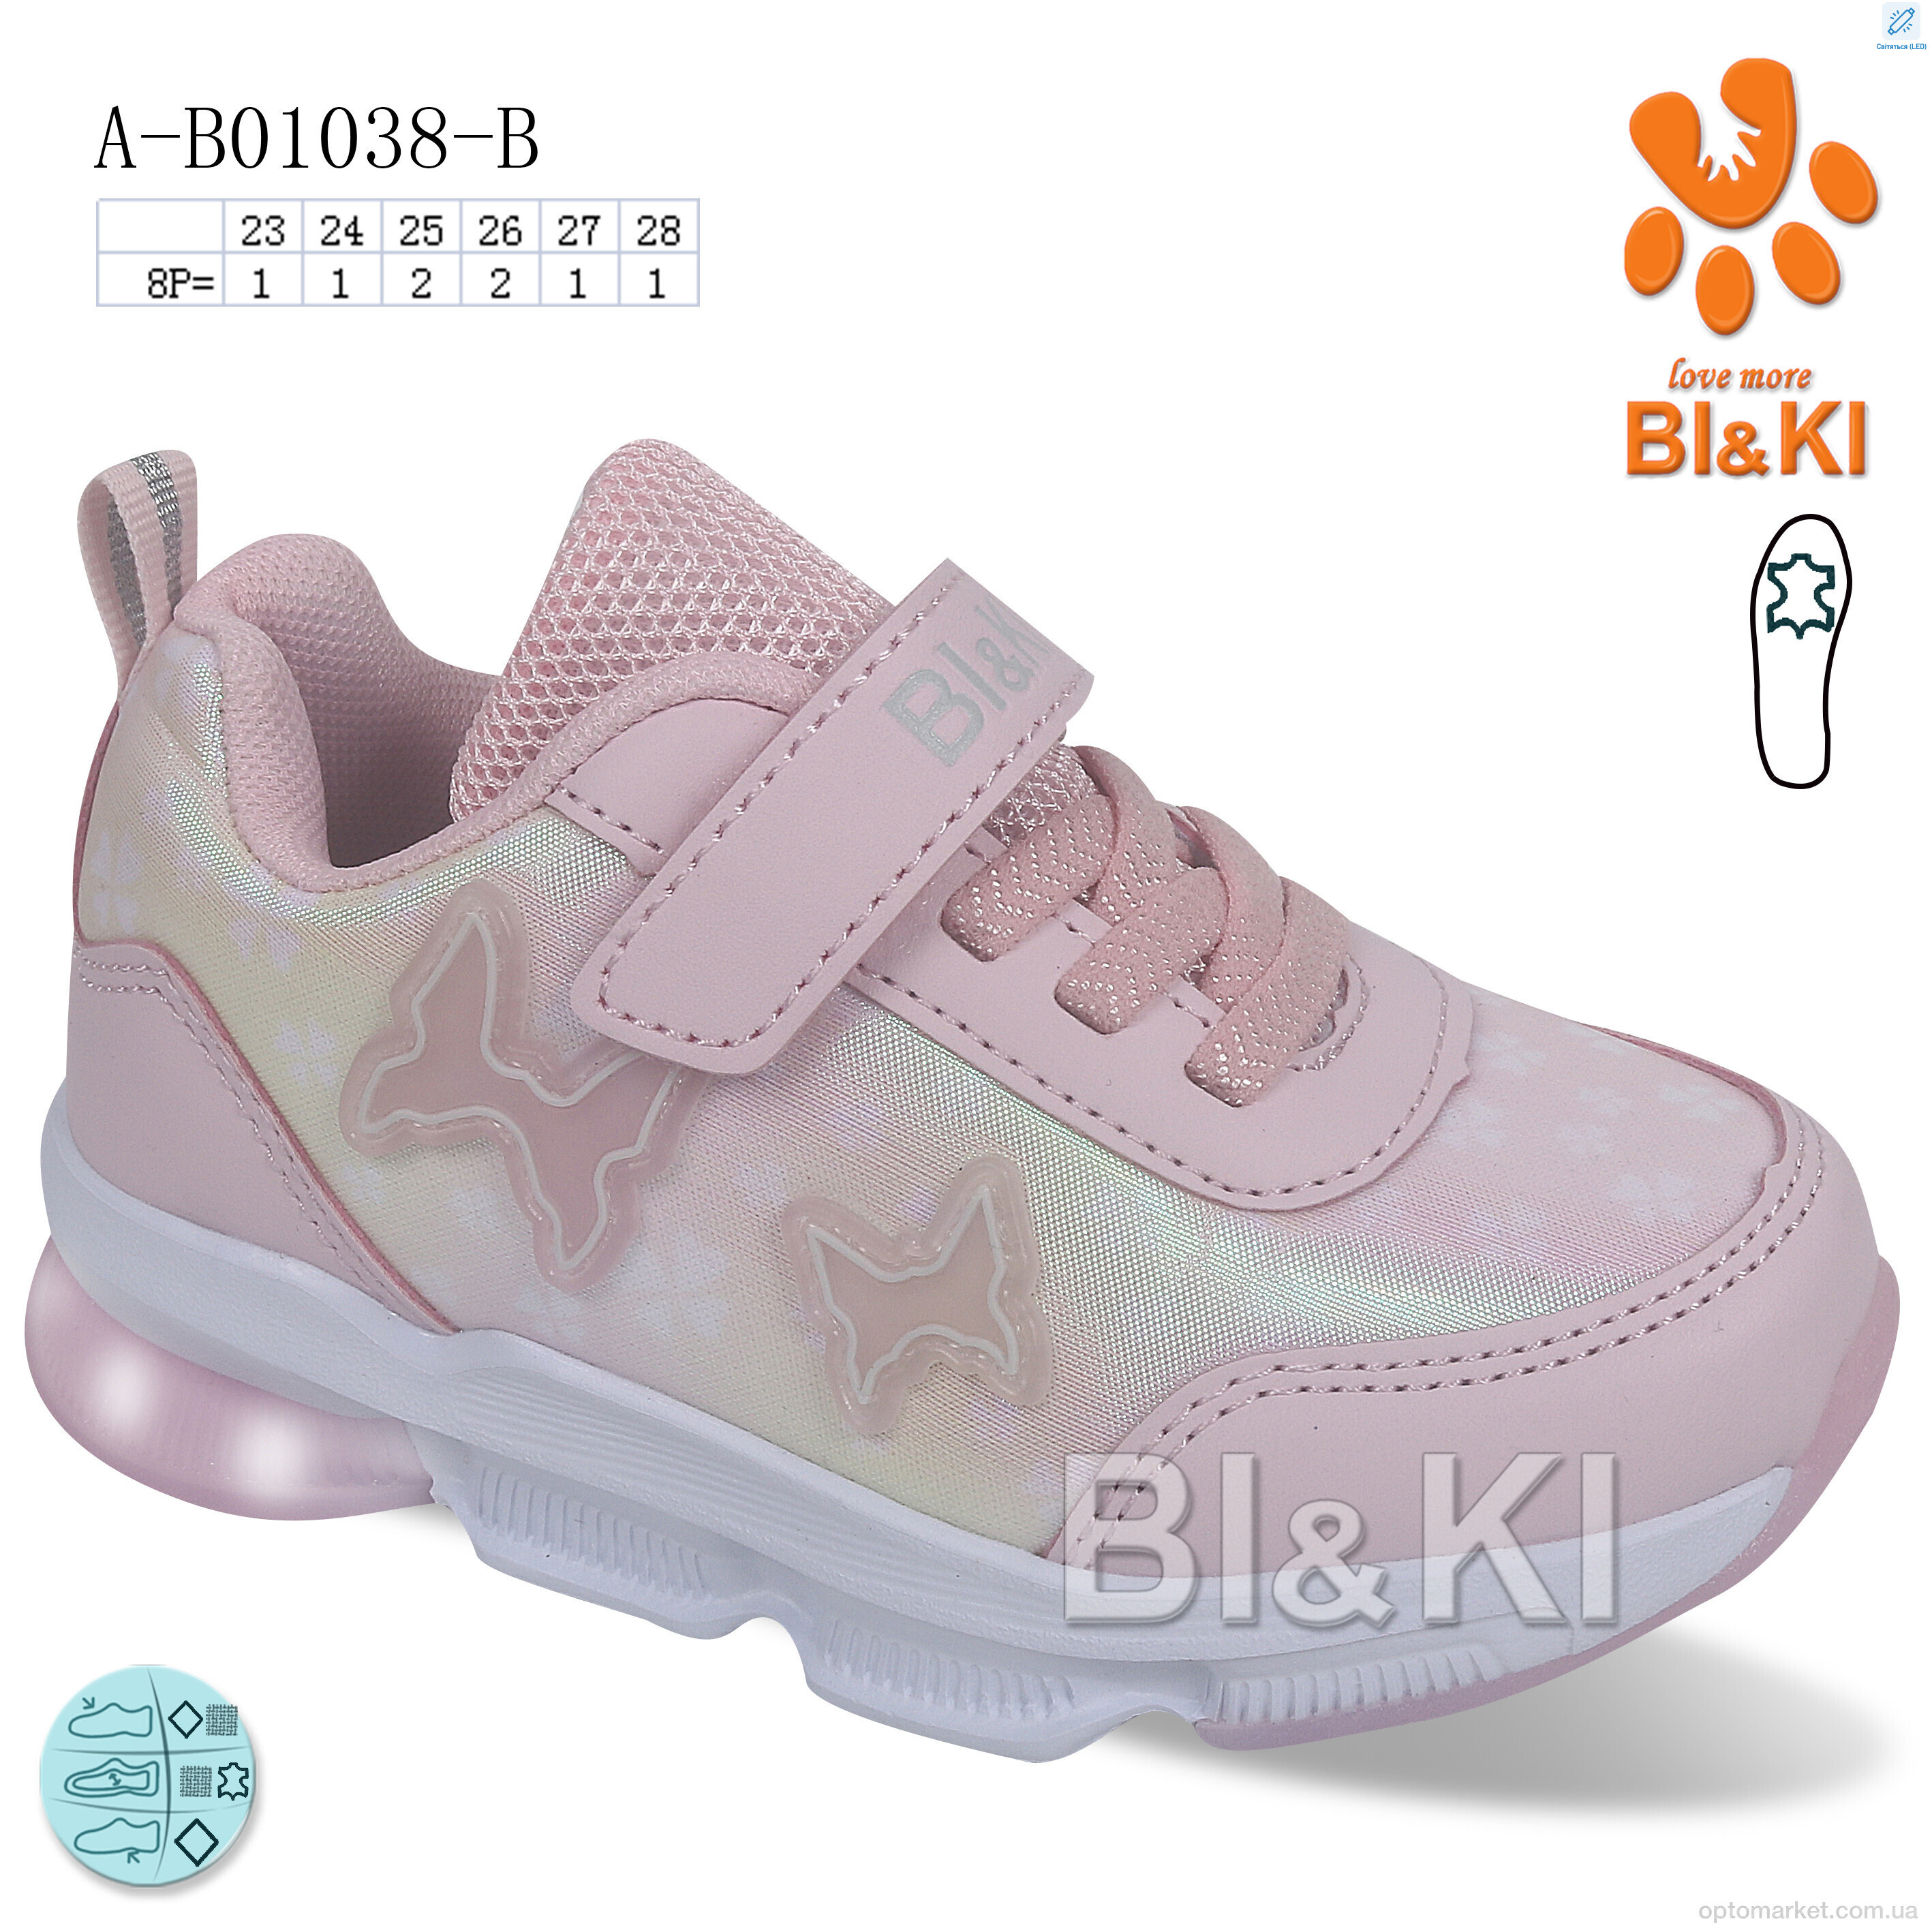 Купить Кросівки дитячі A-B01038-B BL&KL рожевий, фото 1